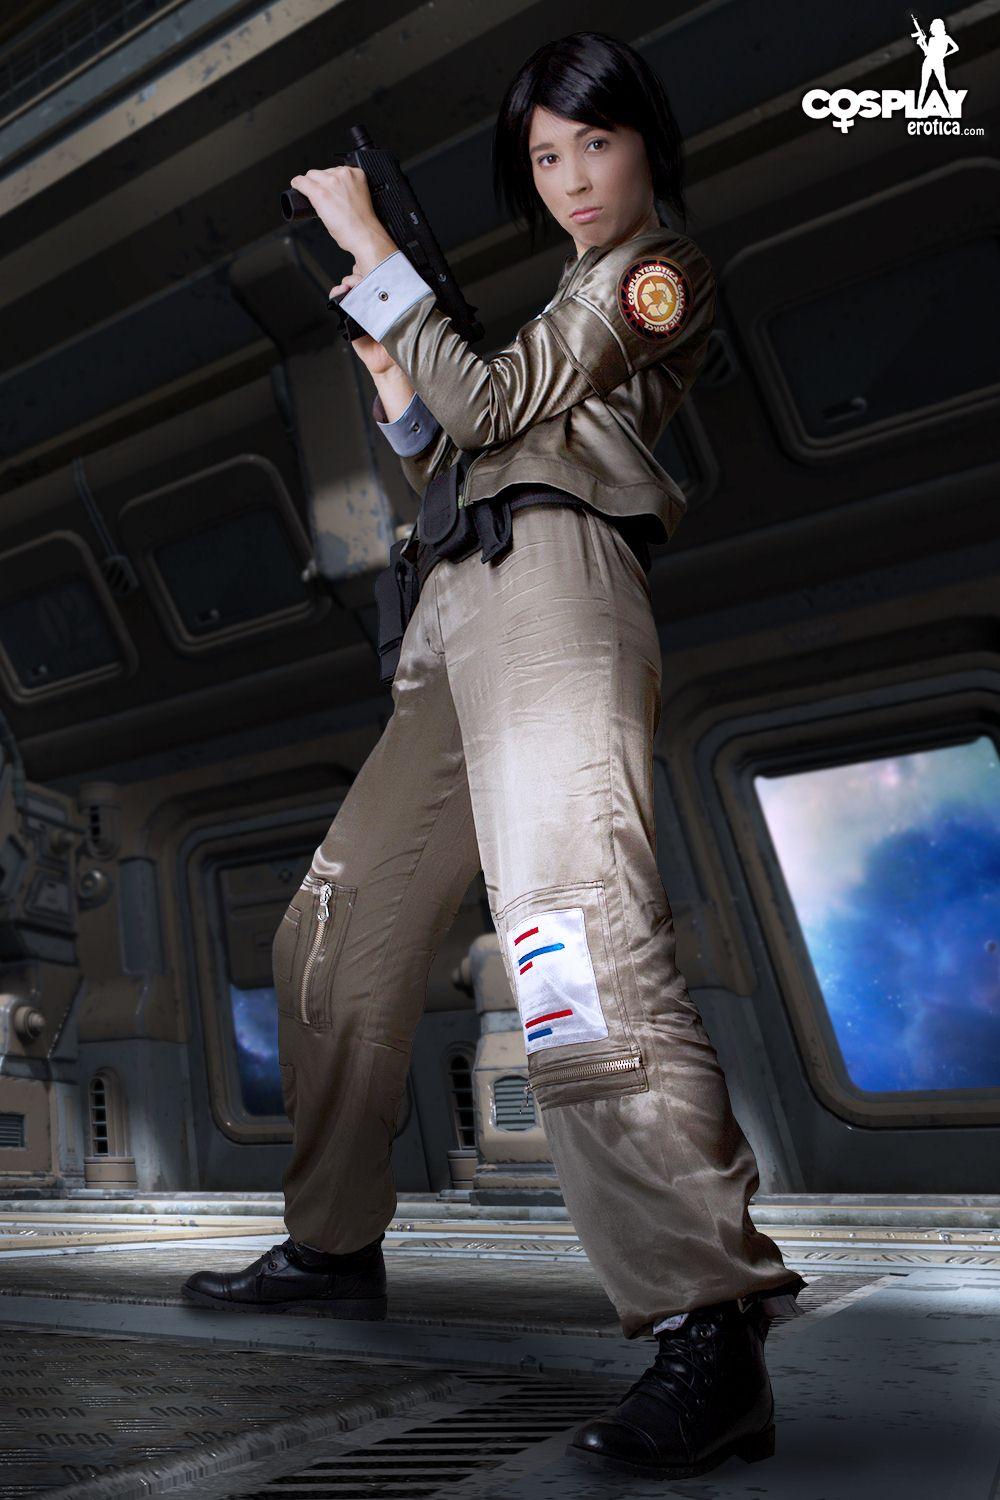 Photos de la cosplayeuse stacy habillée pour le service sur battlestar galactica
 #60298251